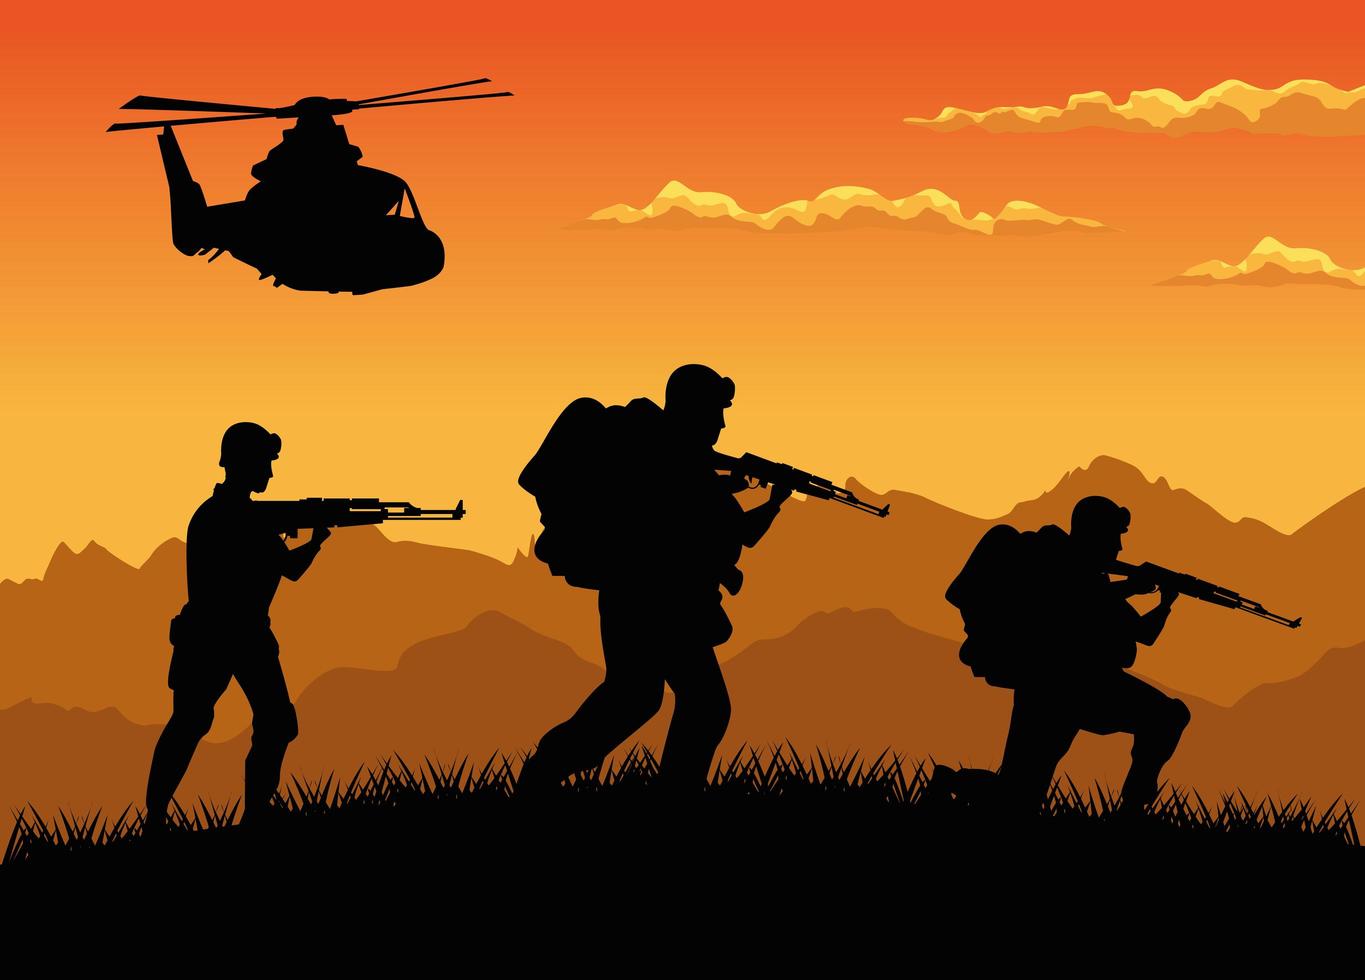 soldados militares com armas e silhuetas de helicóptero cena do pôr do sol vetor